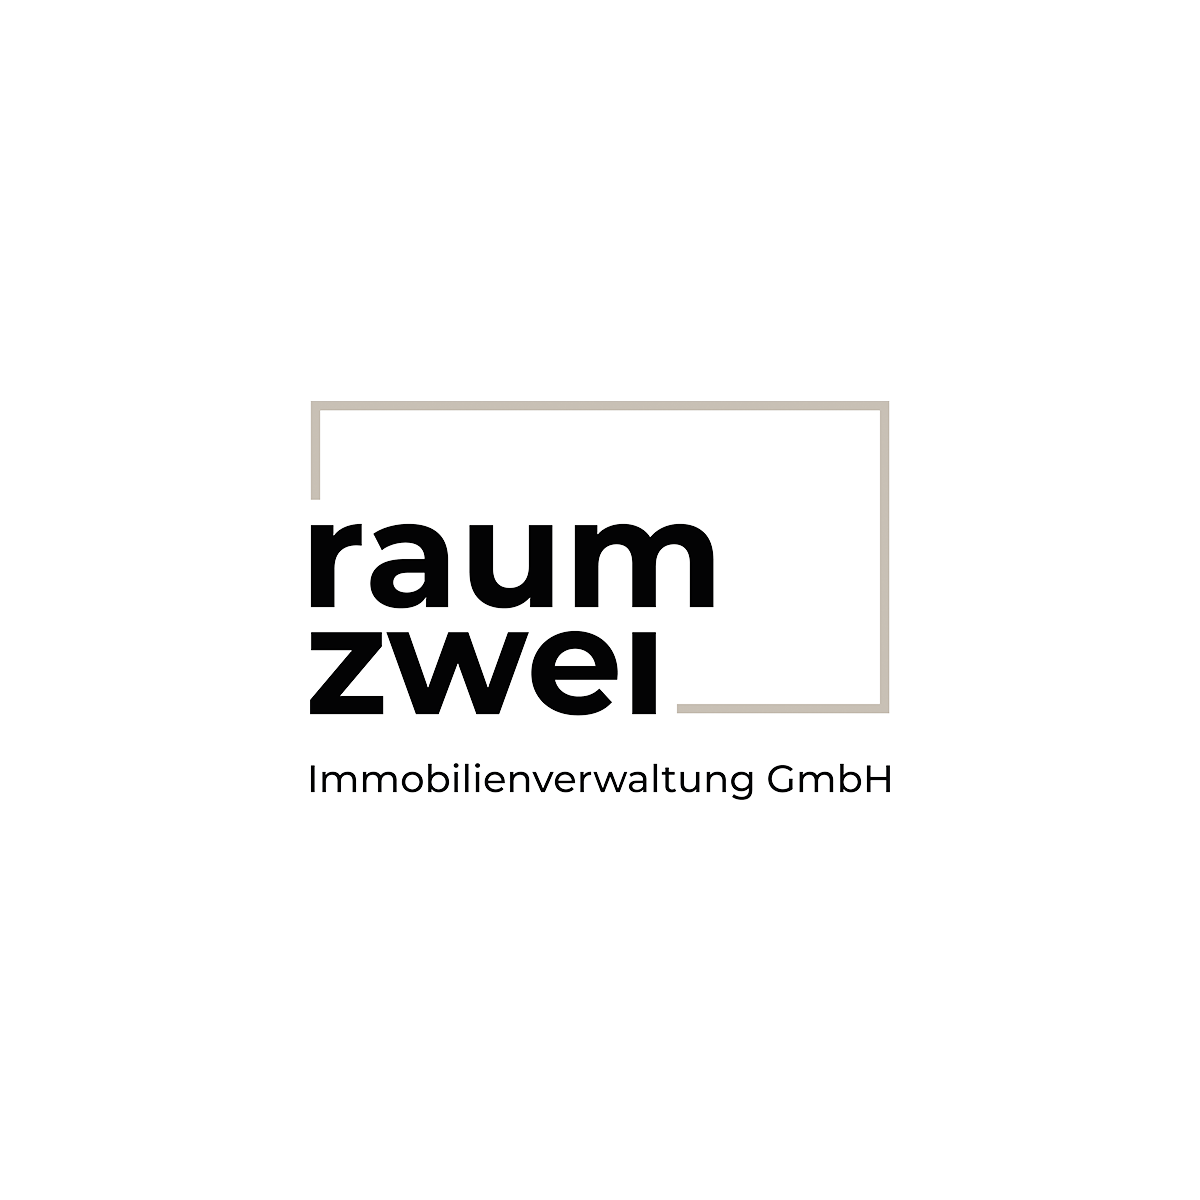 20220119-raumzwei-logo-schwarz-farbig-auf-weiss